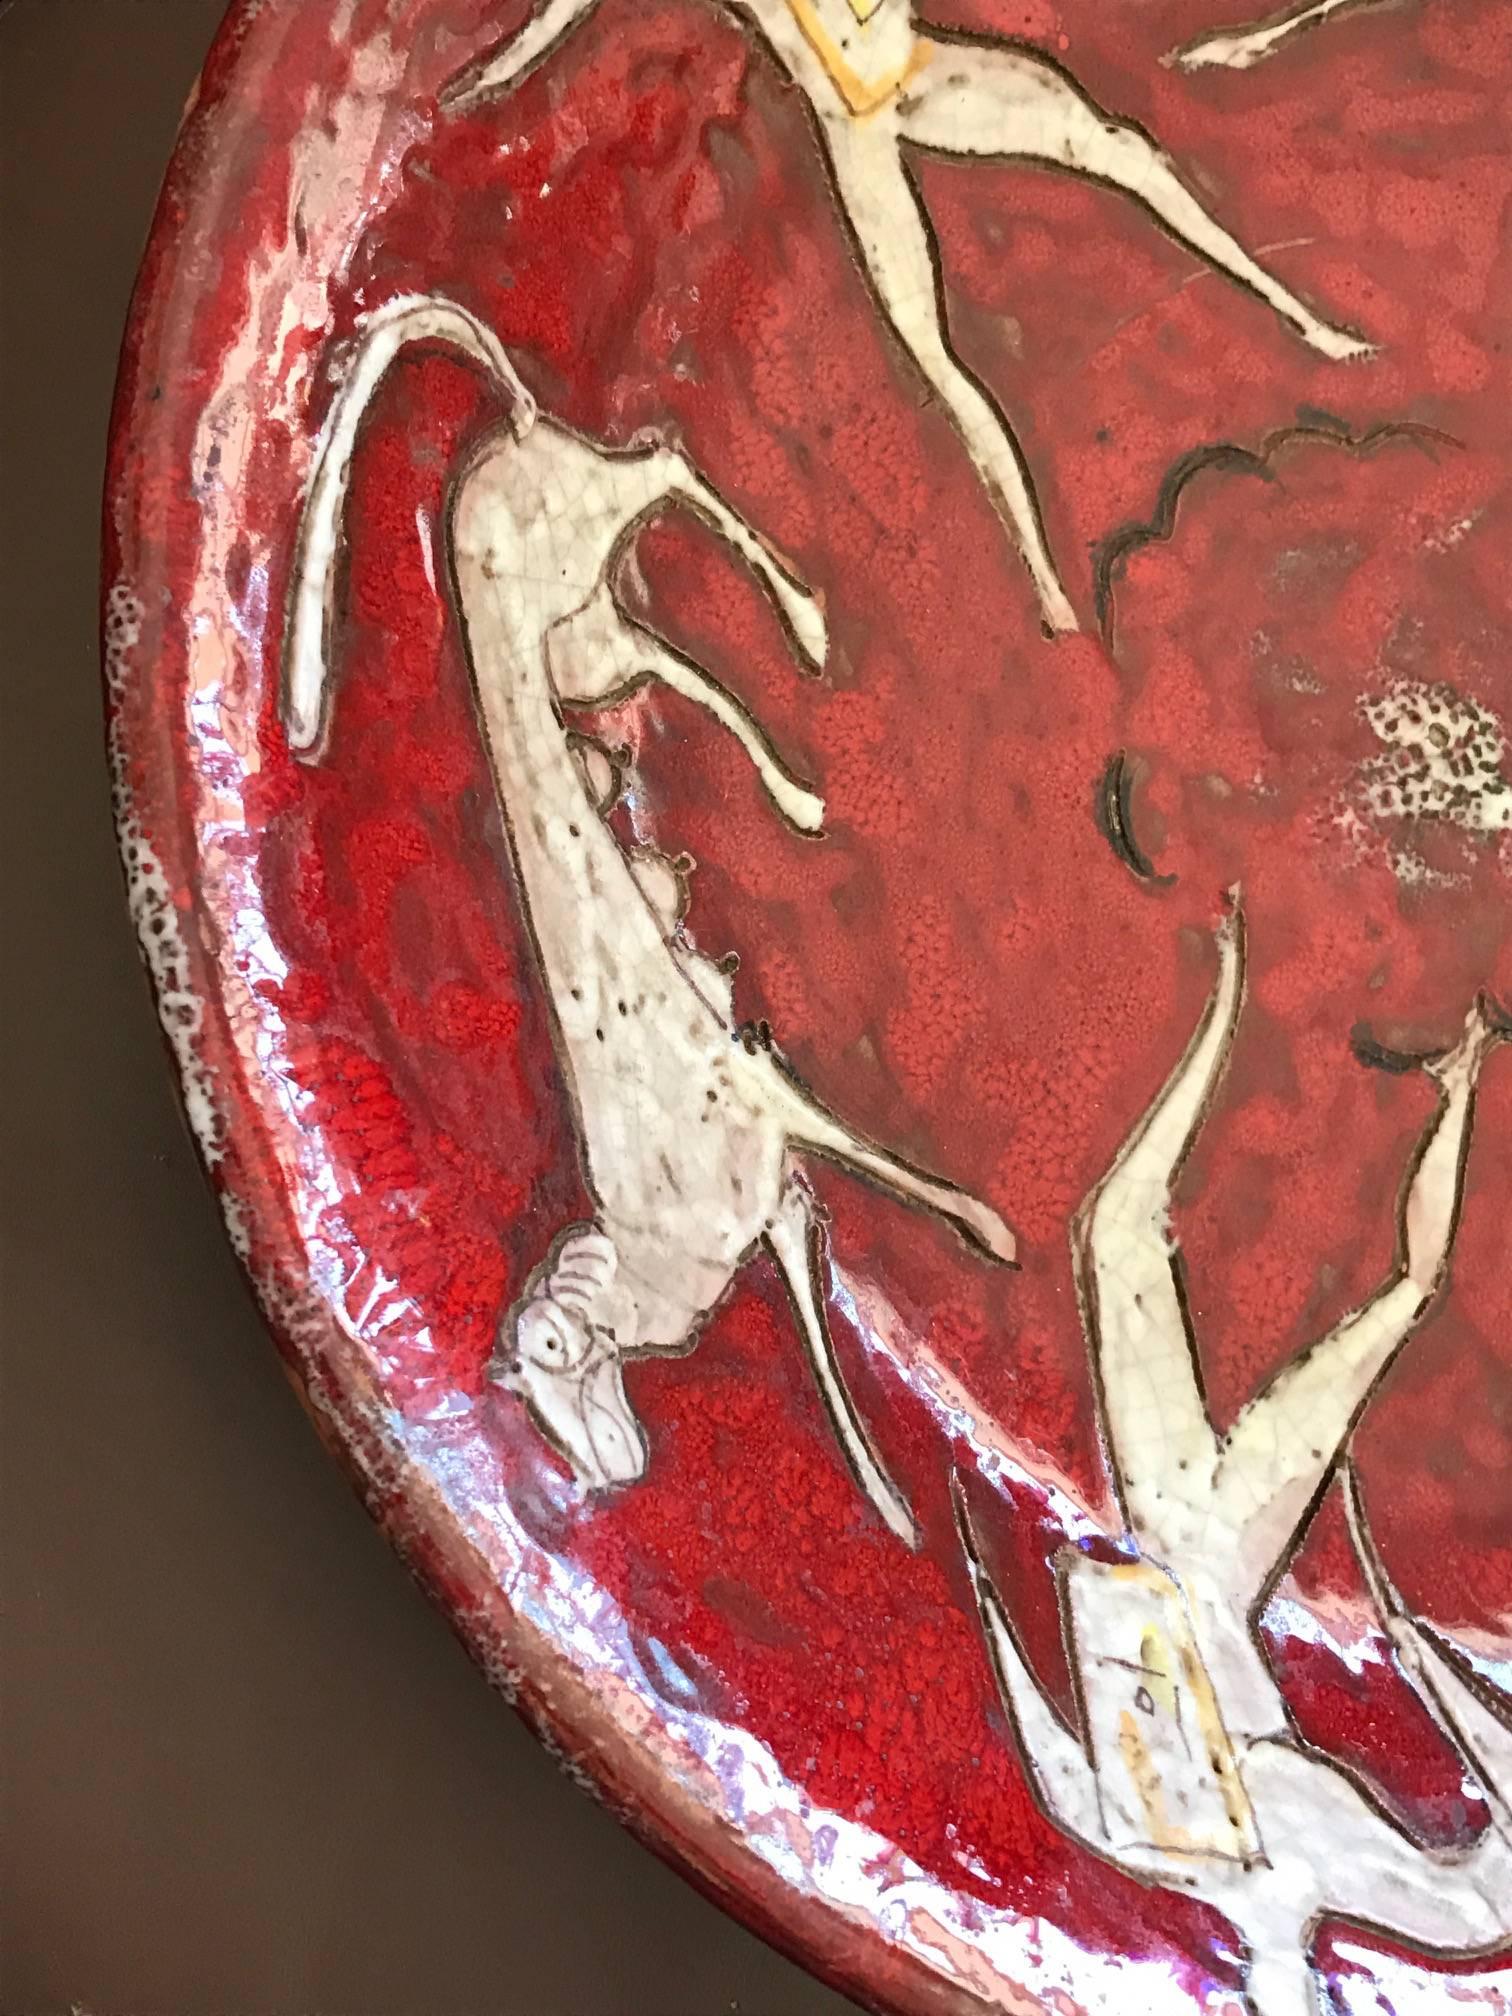 Ein fantastisches und seltenes Keramik-Ladegerät von Eugenio Pattarino. Lebendige rote Farbe und klassischen italienischen Mid-Century-Stil ist sehr gut in diesem Stück vertreten. Eugenio Pattarino wurde 1885 geboren und verstarb 1971. Er war ein